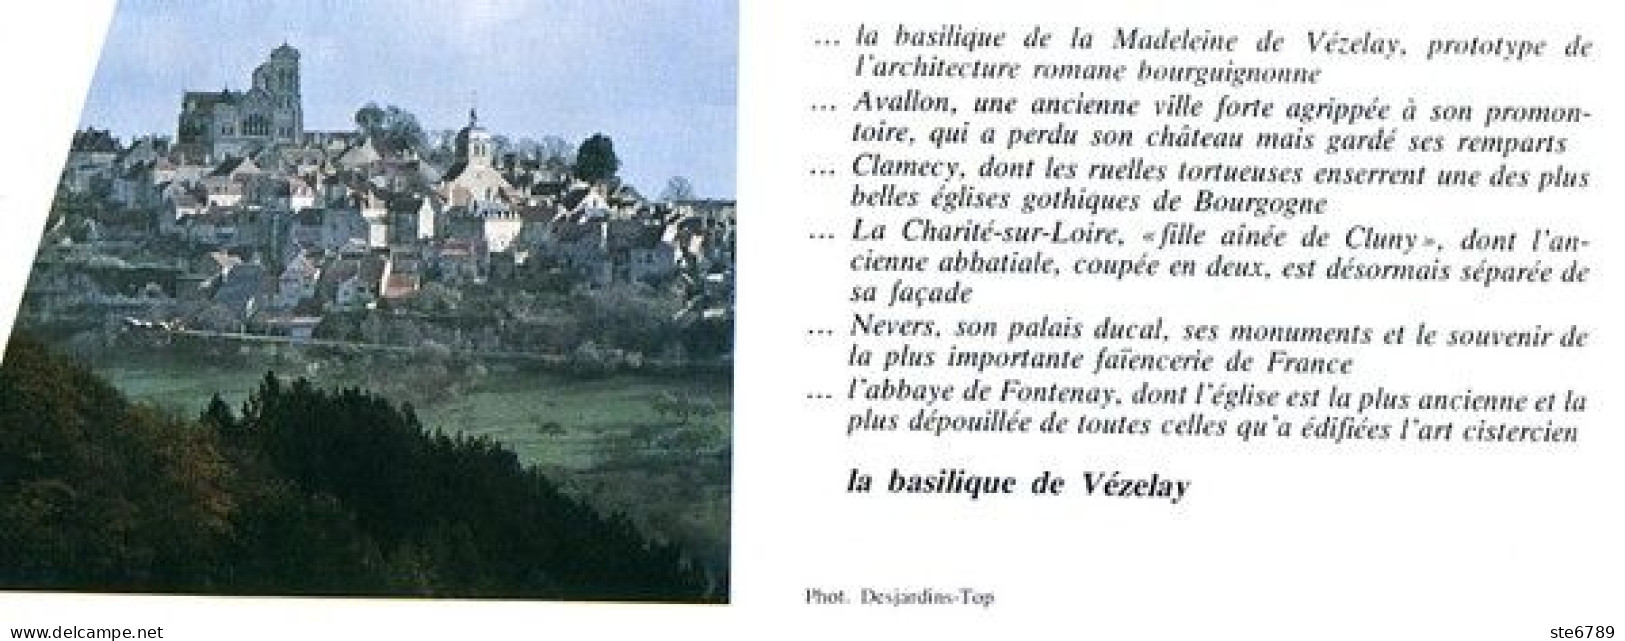 BASILIQUE DE VEZELAY   Revue Photos 1982  BEAUTES DE LA FRANCE N° 97 - Géographie